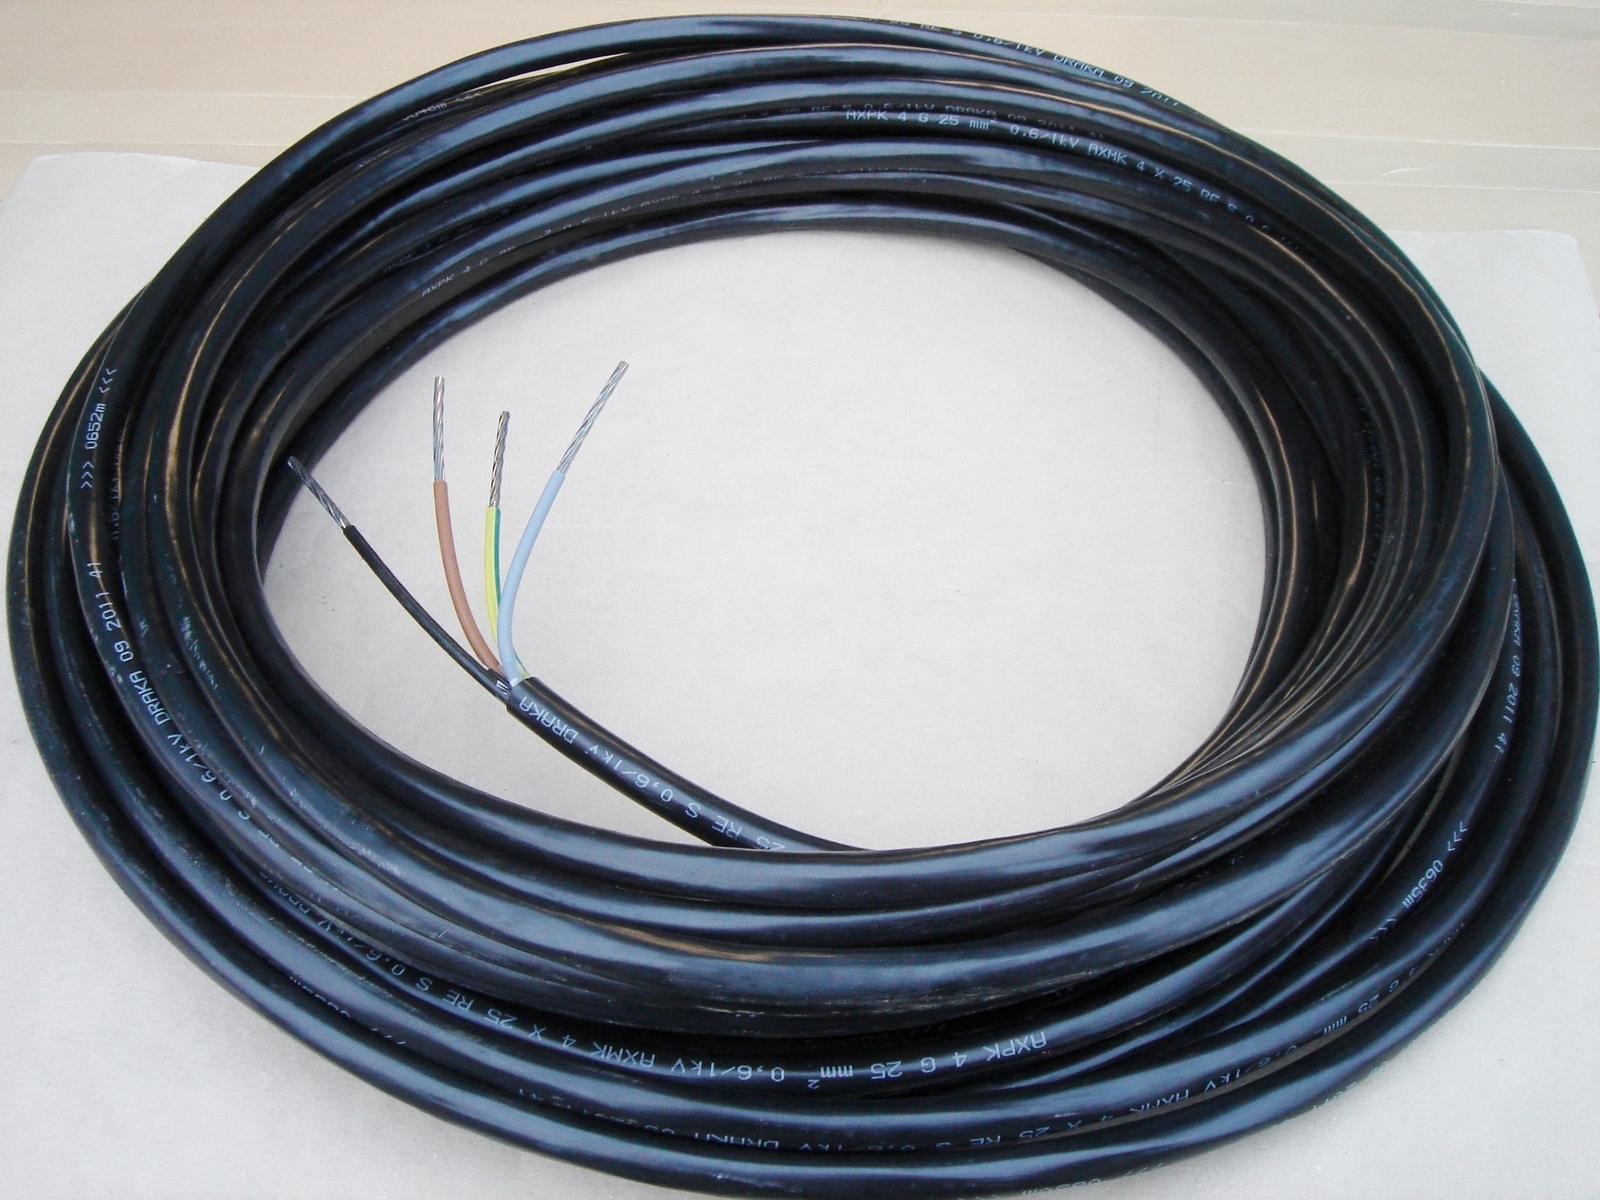 Алюминиевый земляной кабель 4x25 мм² - 2€/м, AXPK 4G25мм2, Draka .